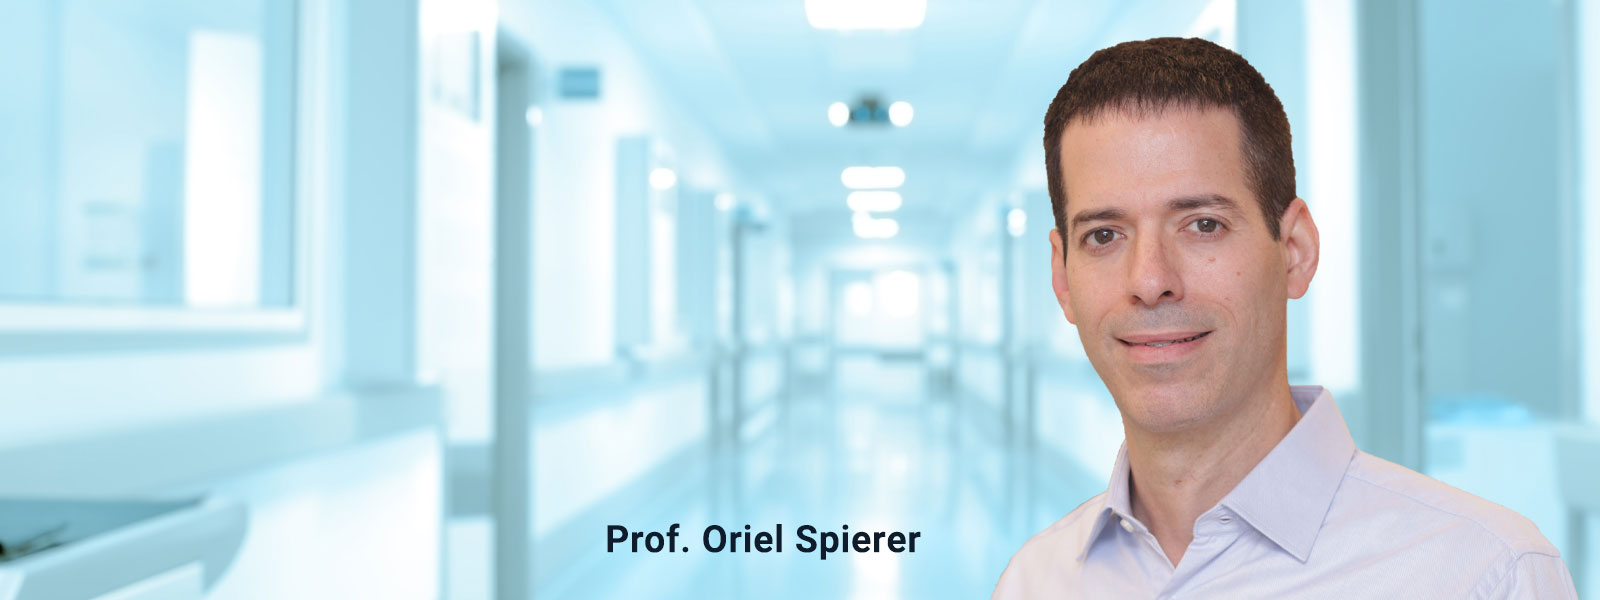 Prof. Oriel Spierer